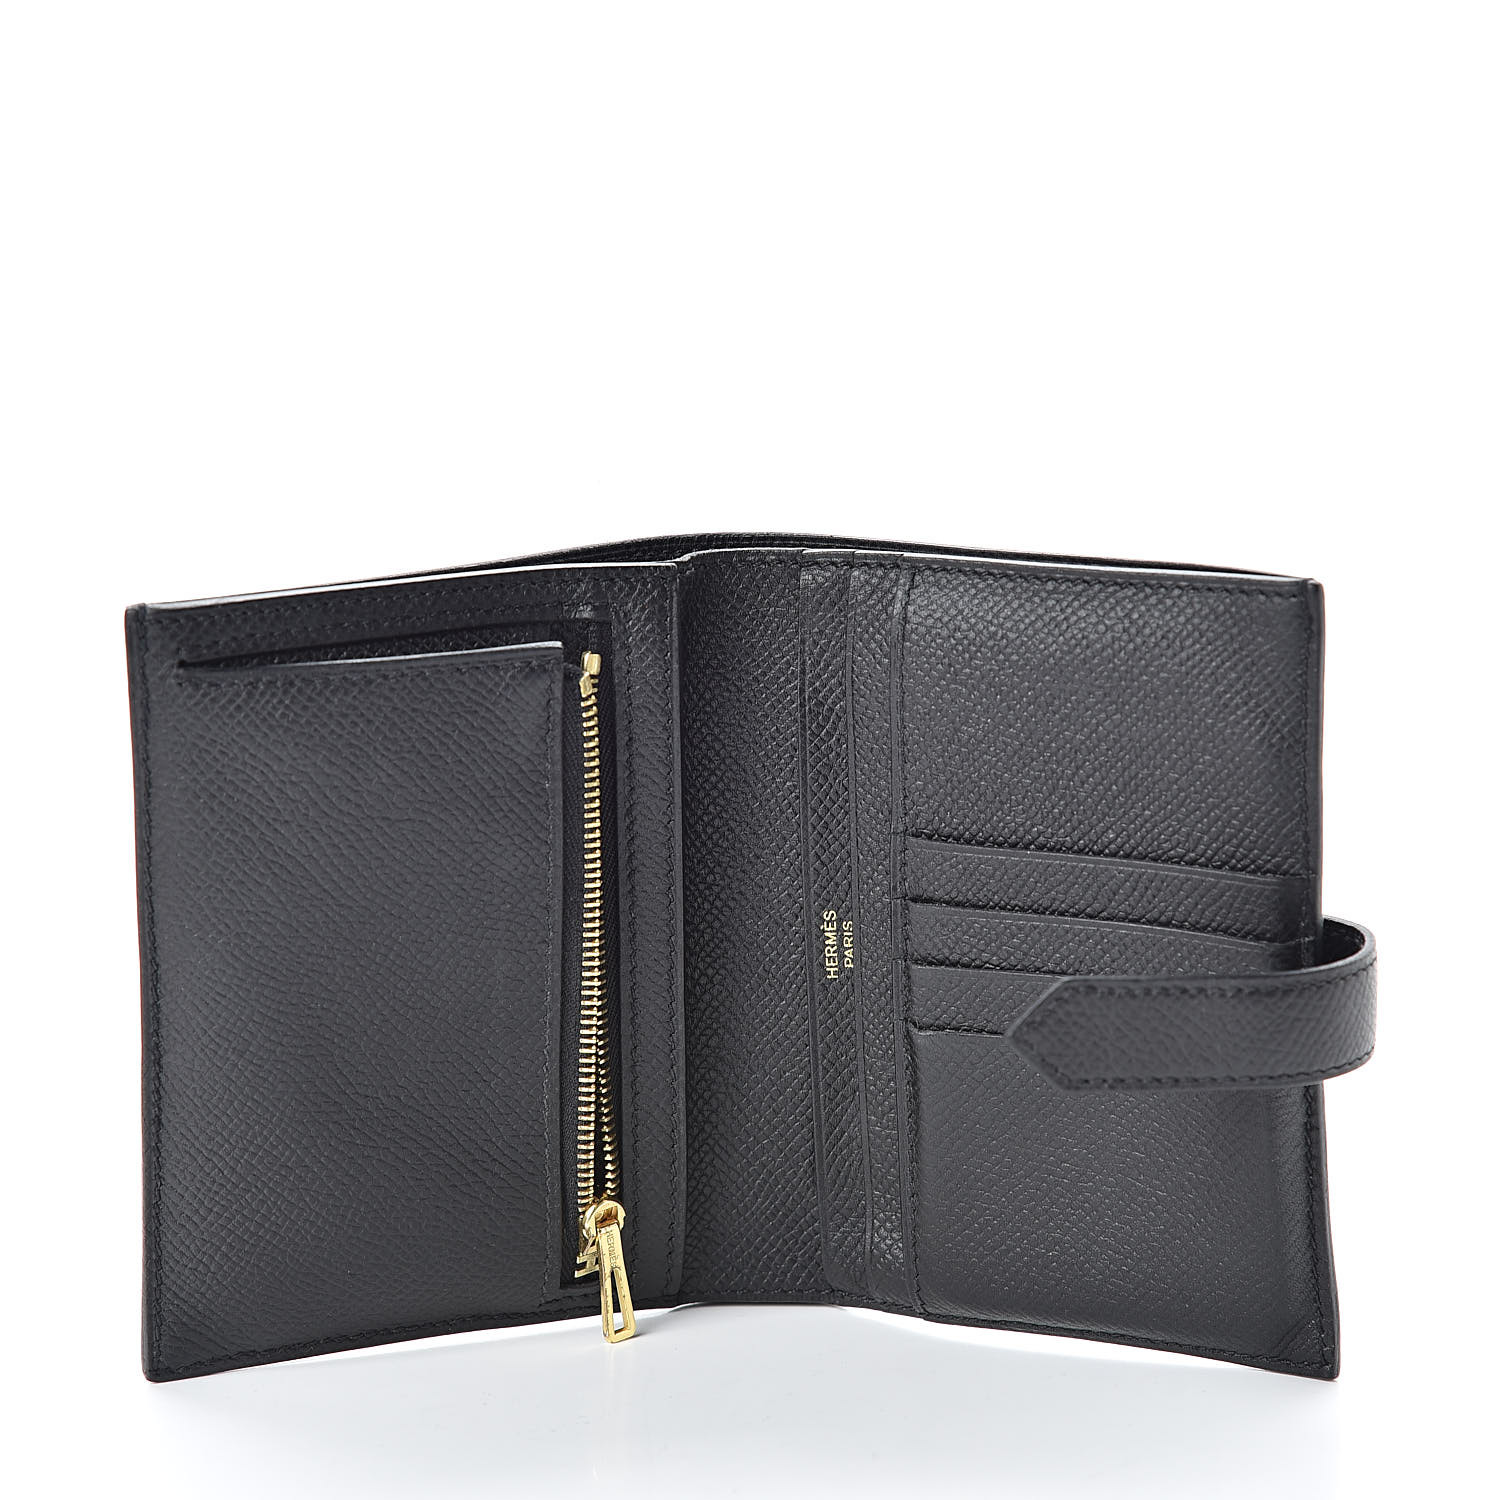 HERMES Epsom Bearn Compact Wallet Black 504007